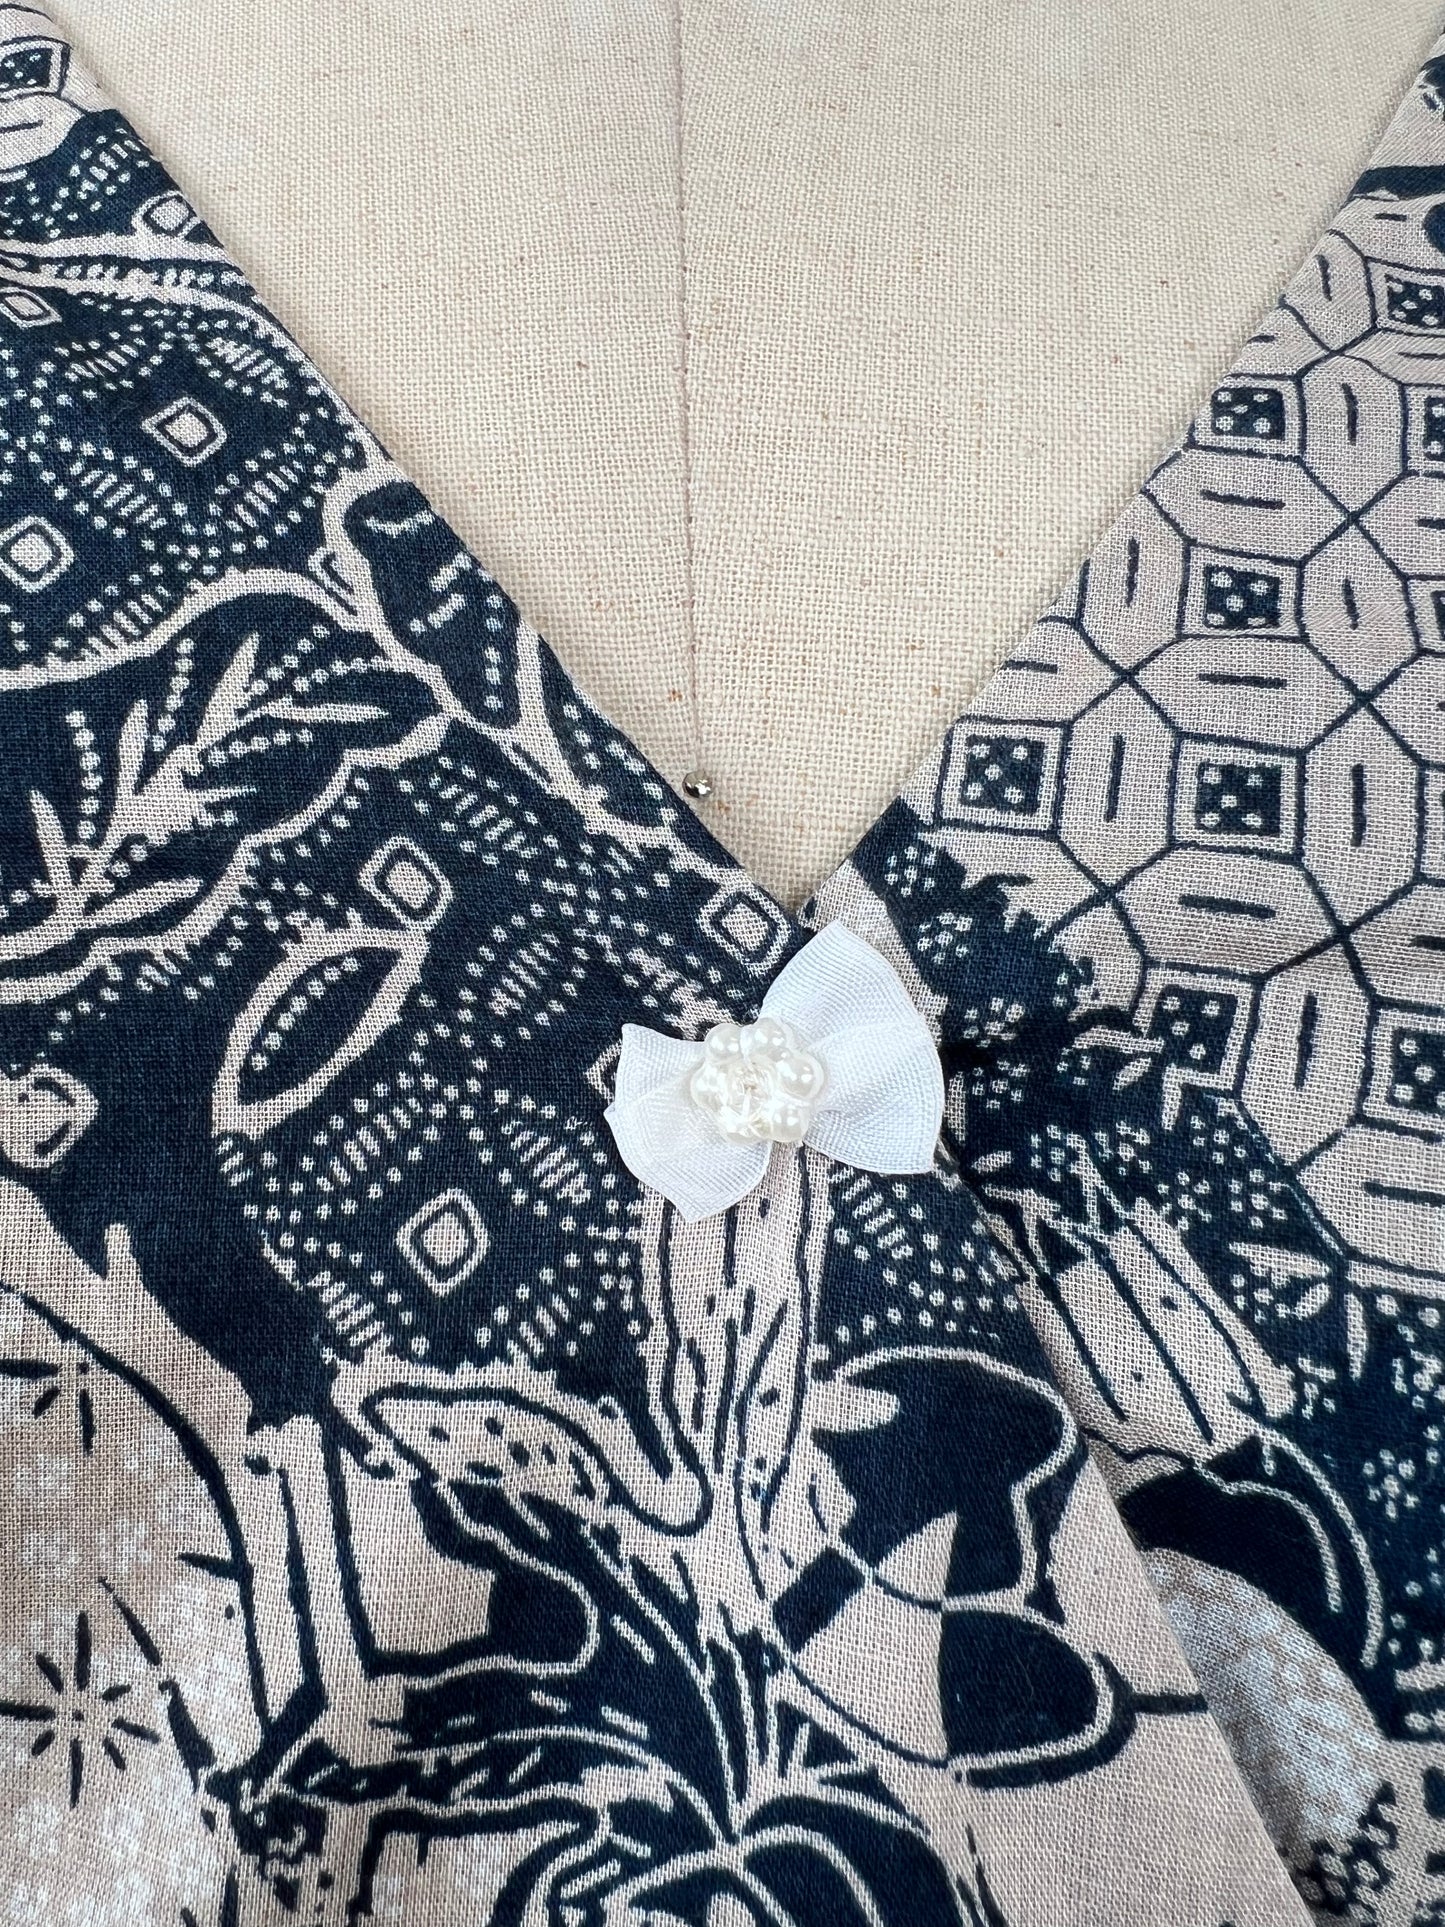 Robe marine à imprimé floral sable (16)